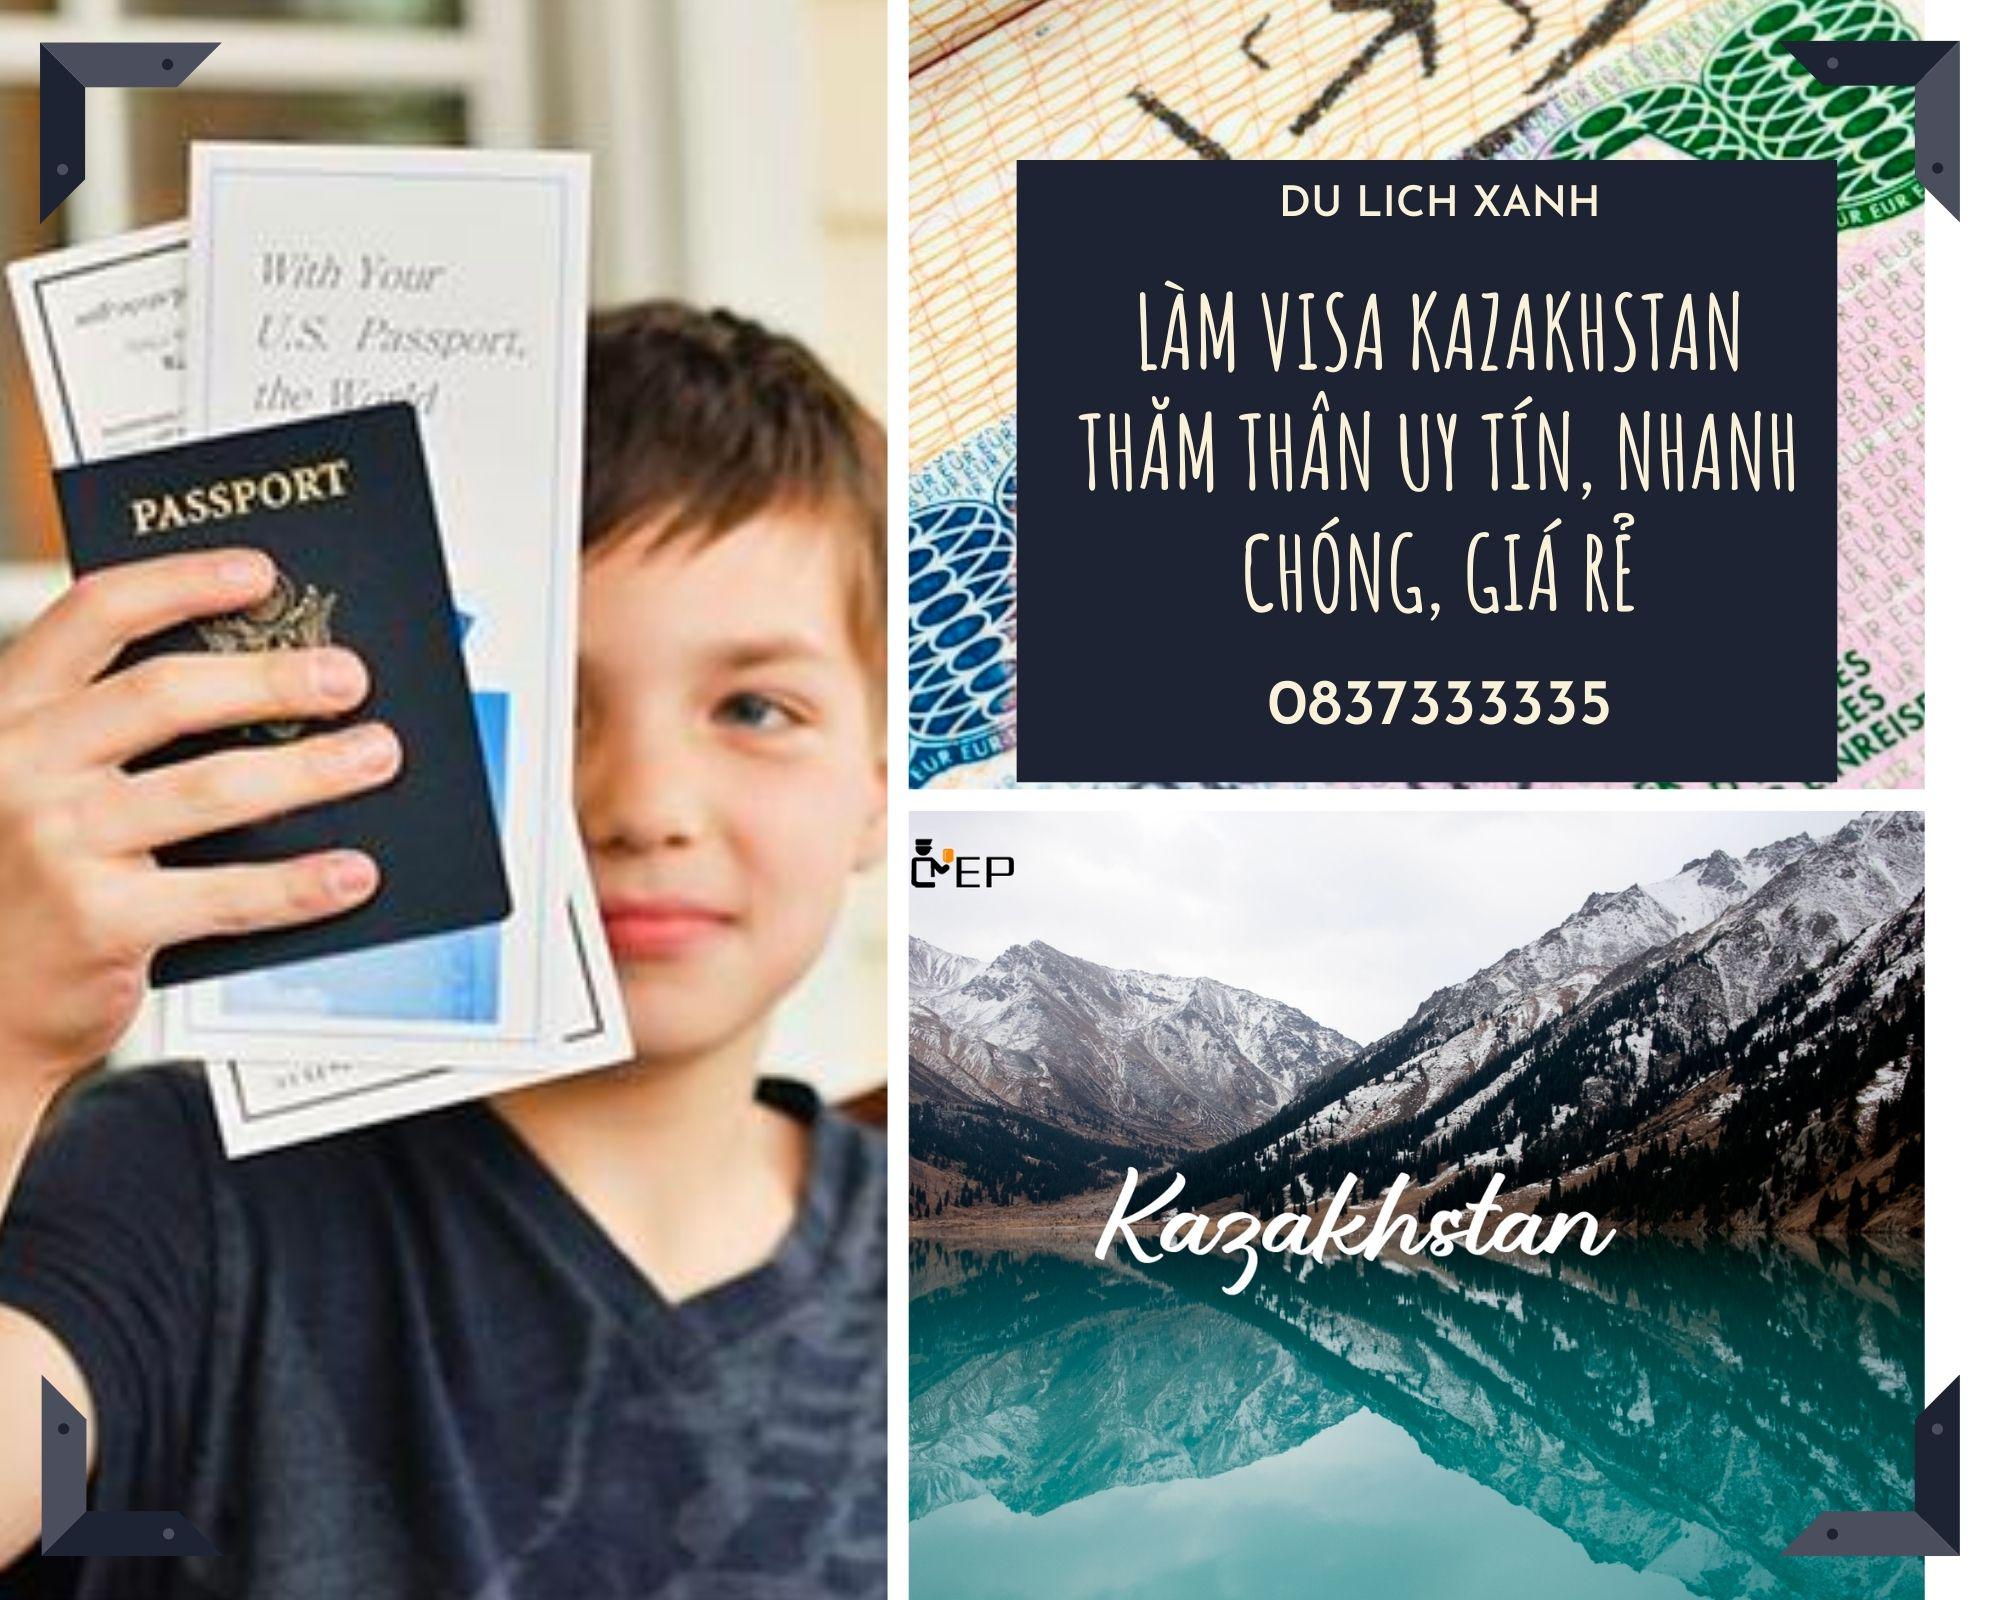 Làm Visa Kazakhstan thăm thân uy tín, nhanh chóng, giá rẻ